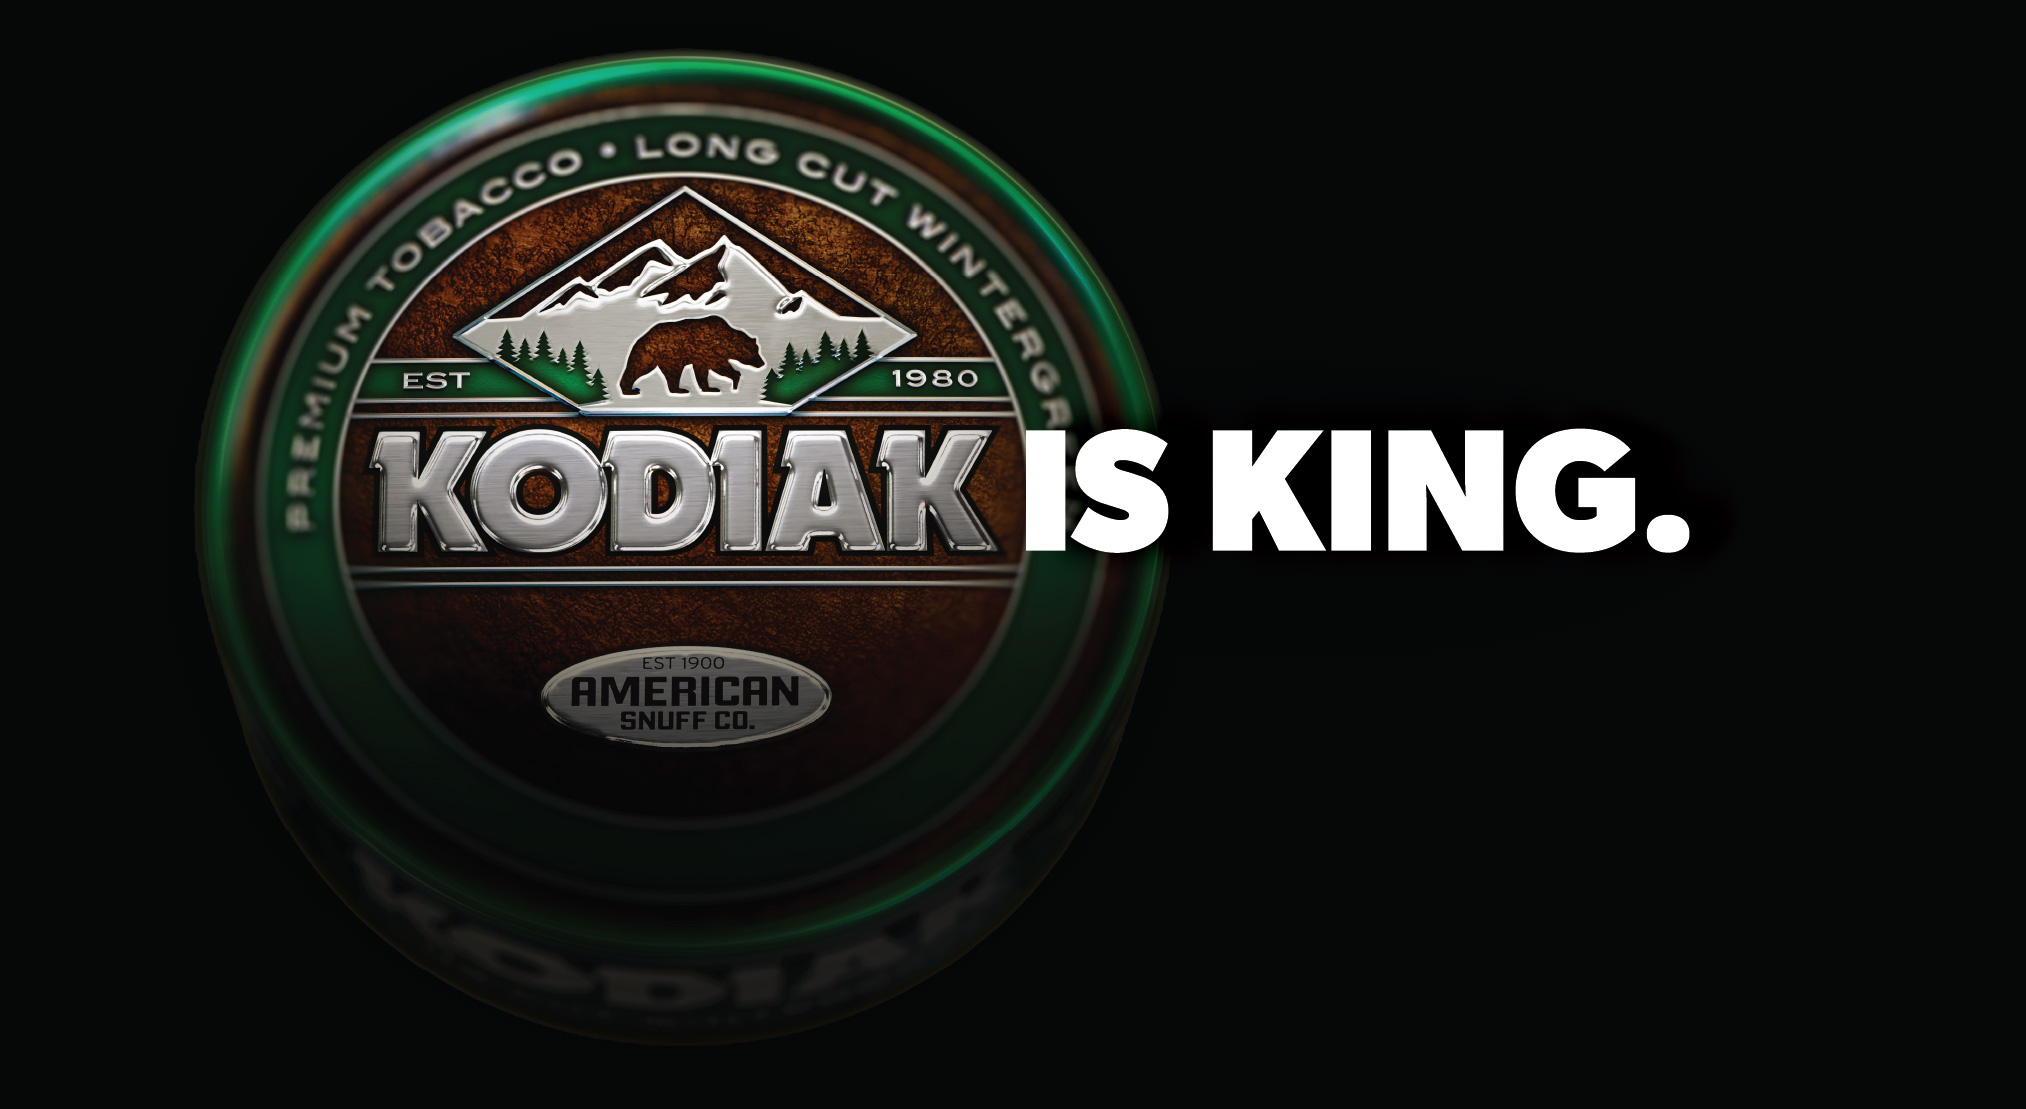 Kodiak is King